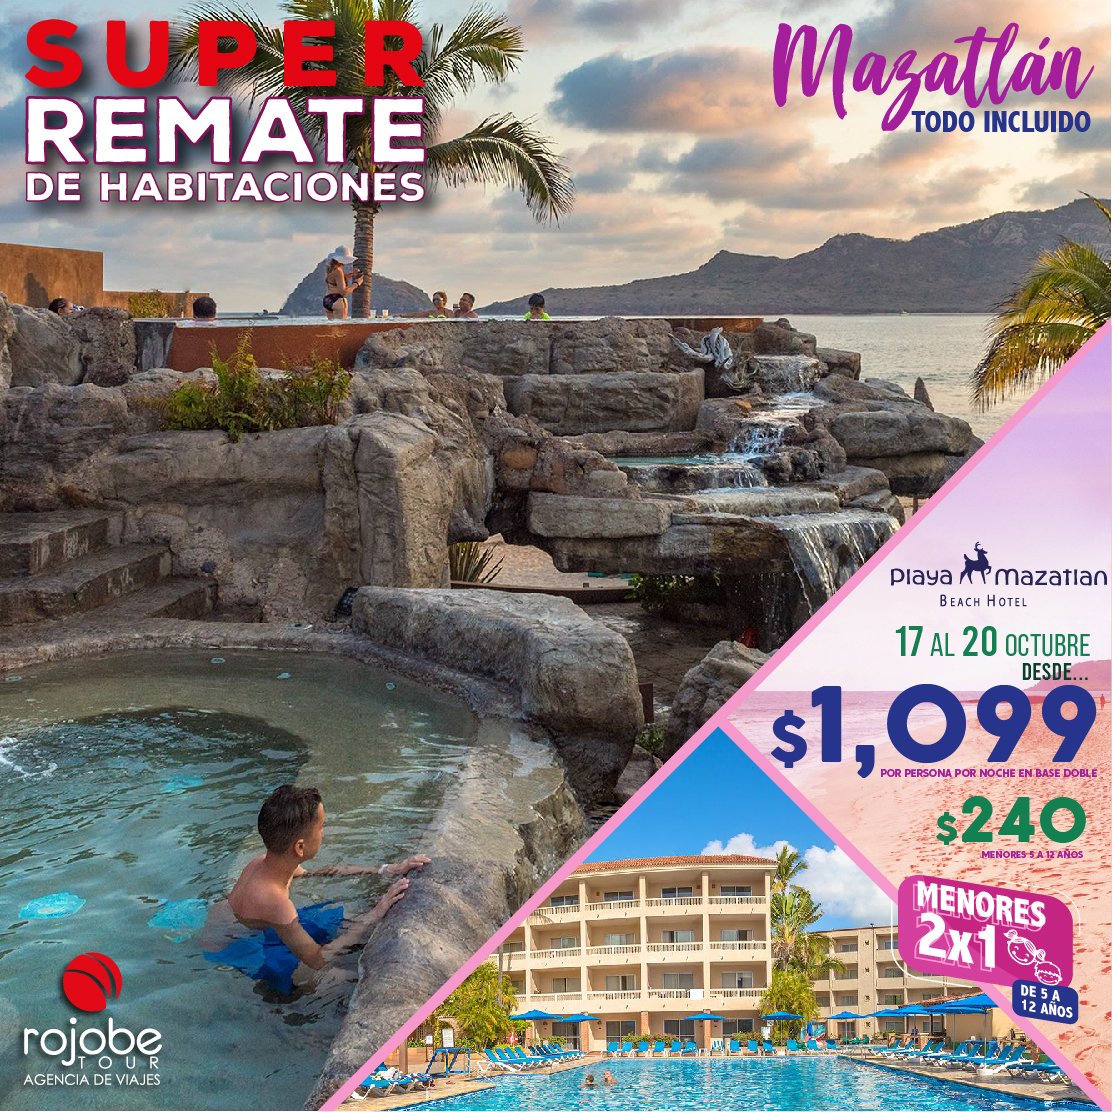 Rojobe Tour on Twitter: "Del 17 al 20 de Octubre hospedandote Hotel Playa Mazatlan con este REMATE de en modalidad INCLUIDO, además los menores al 2x1. ¡RESERVA YA!💥🏃‍♂️#Remate #Mazatlan